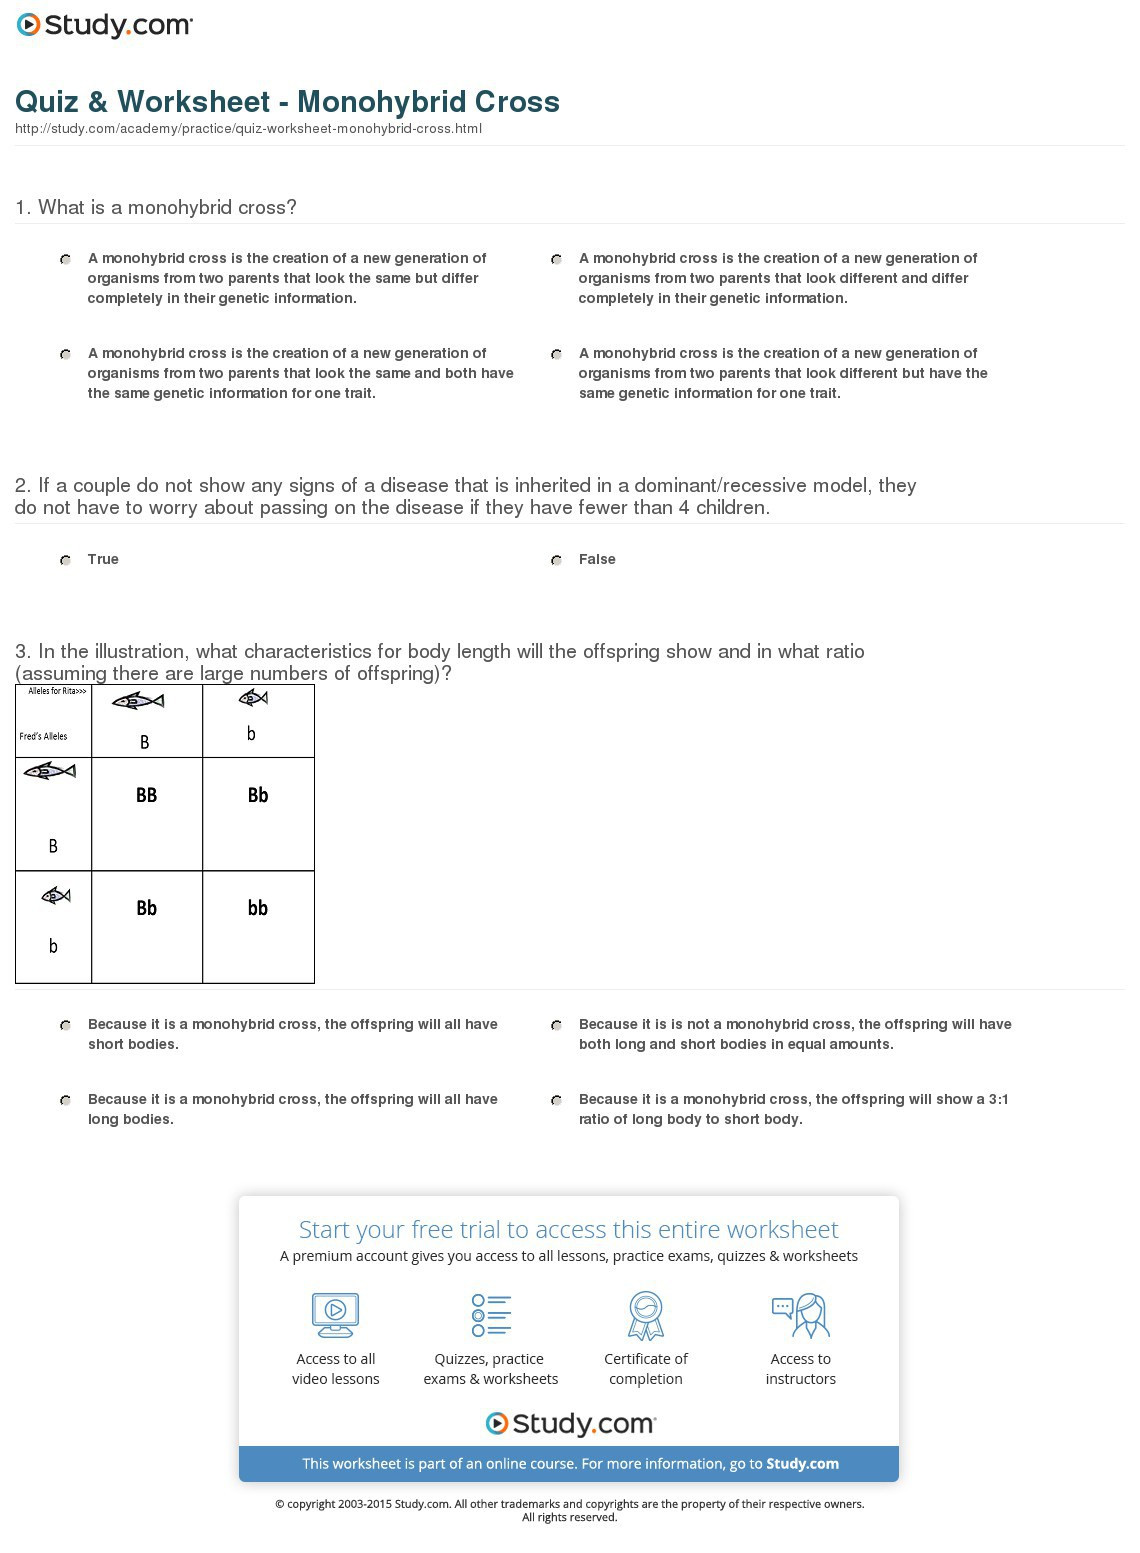 Monohybrid Crosses Worksheet Answers Monohybrid Cross Worksheet